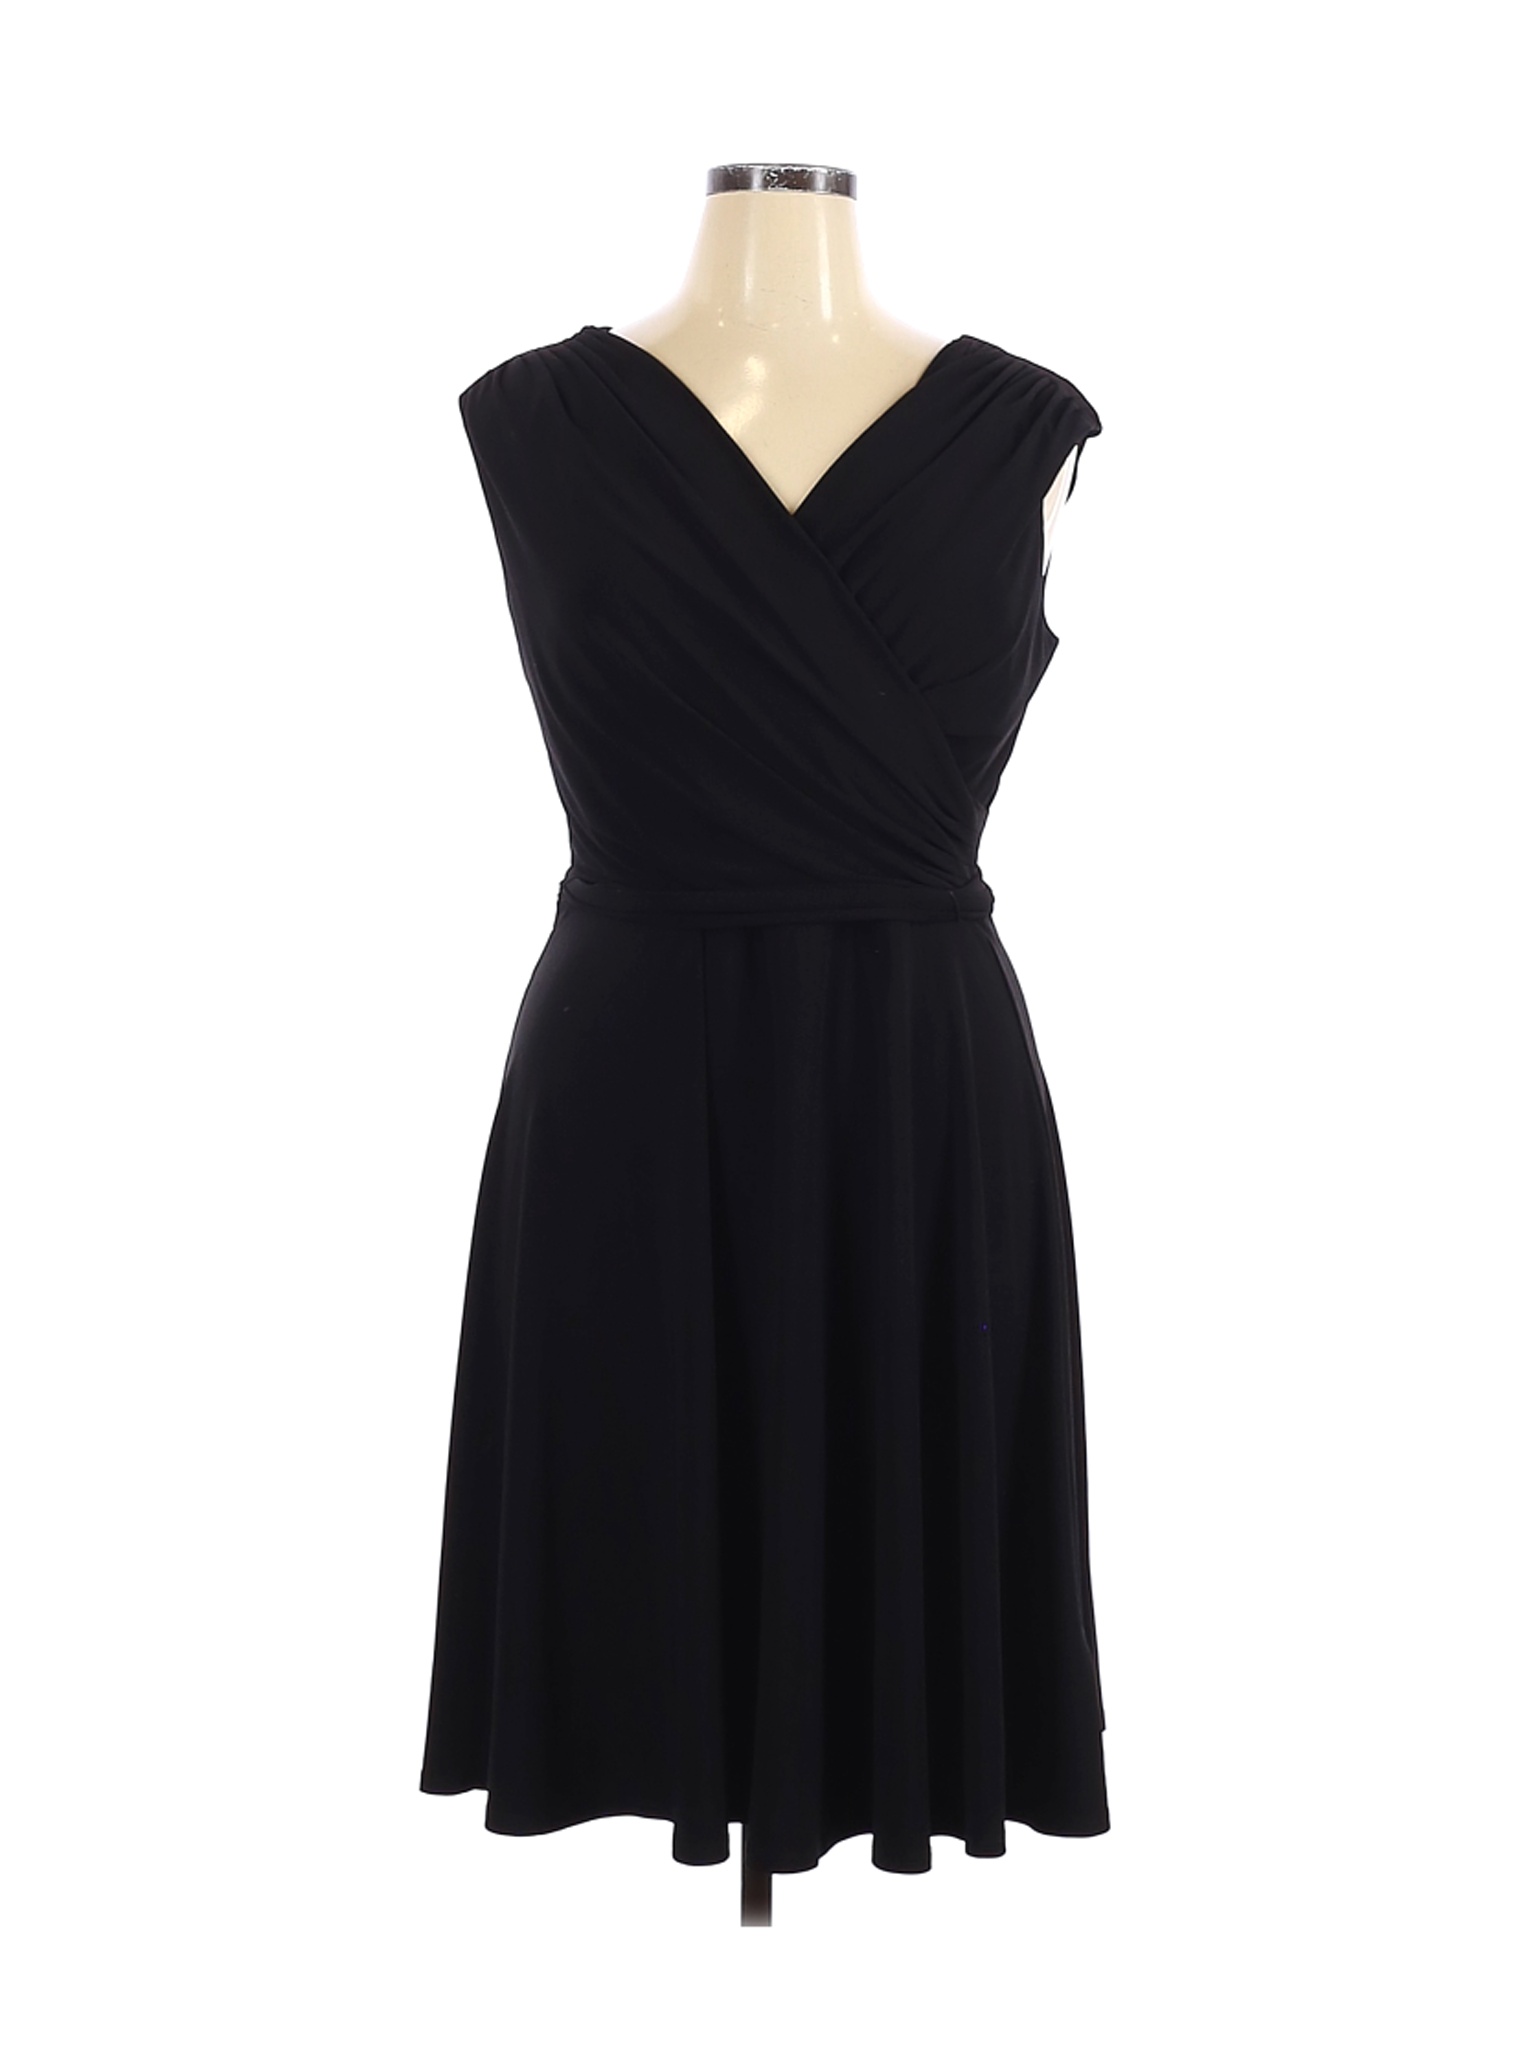 Lauren by Ralph Lauren Women Black Casual Dress 14 | eBay